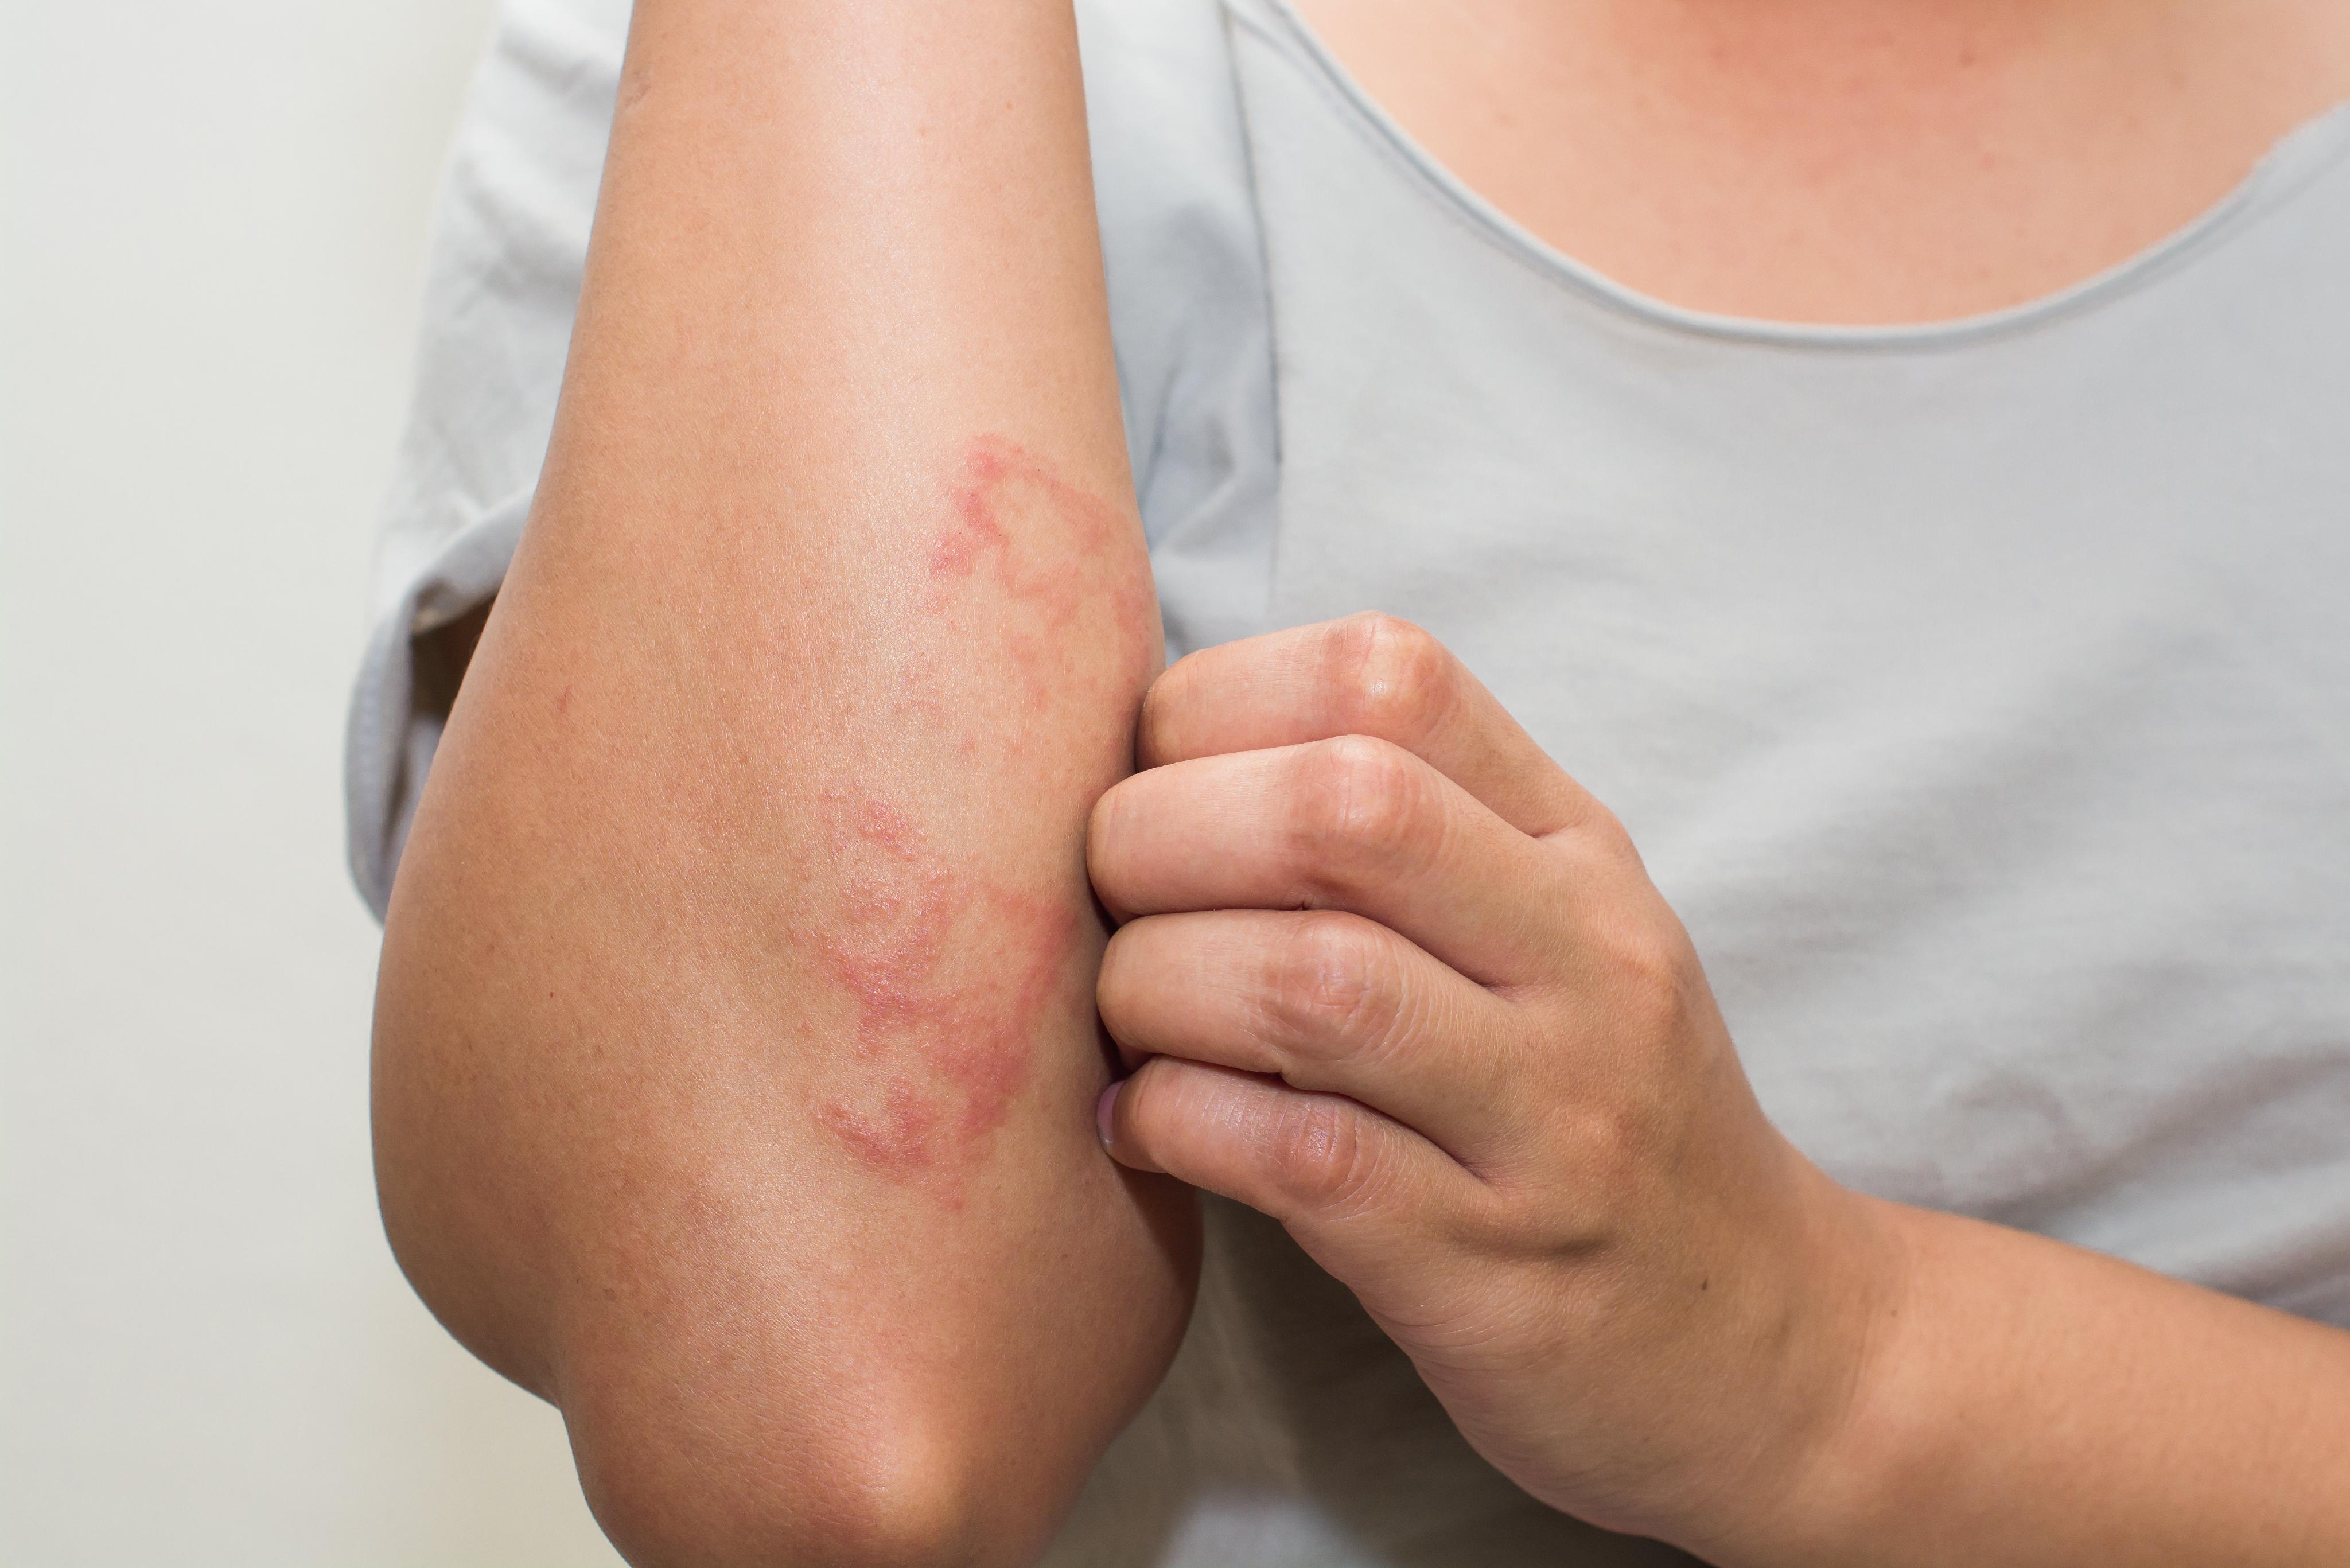 Qué es y cuáles son los síntomas de la dermatitis seborreica? - EL